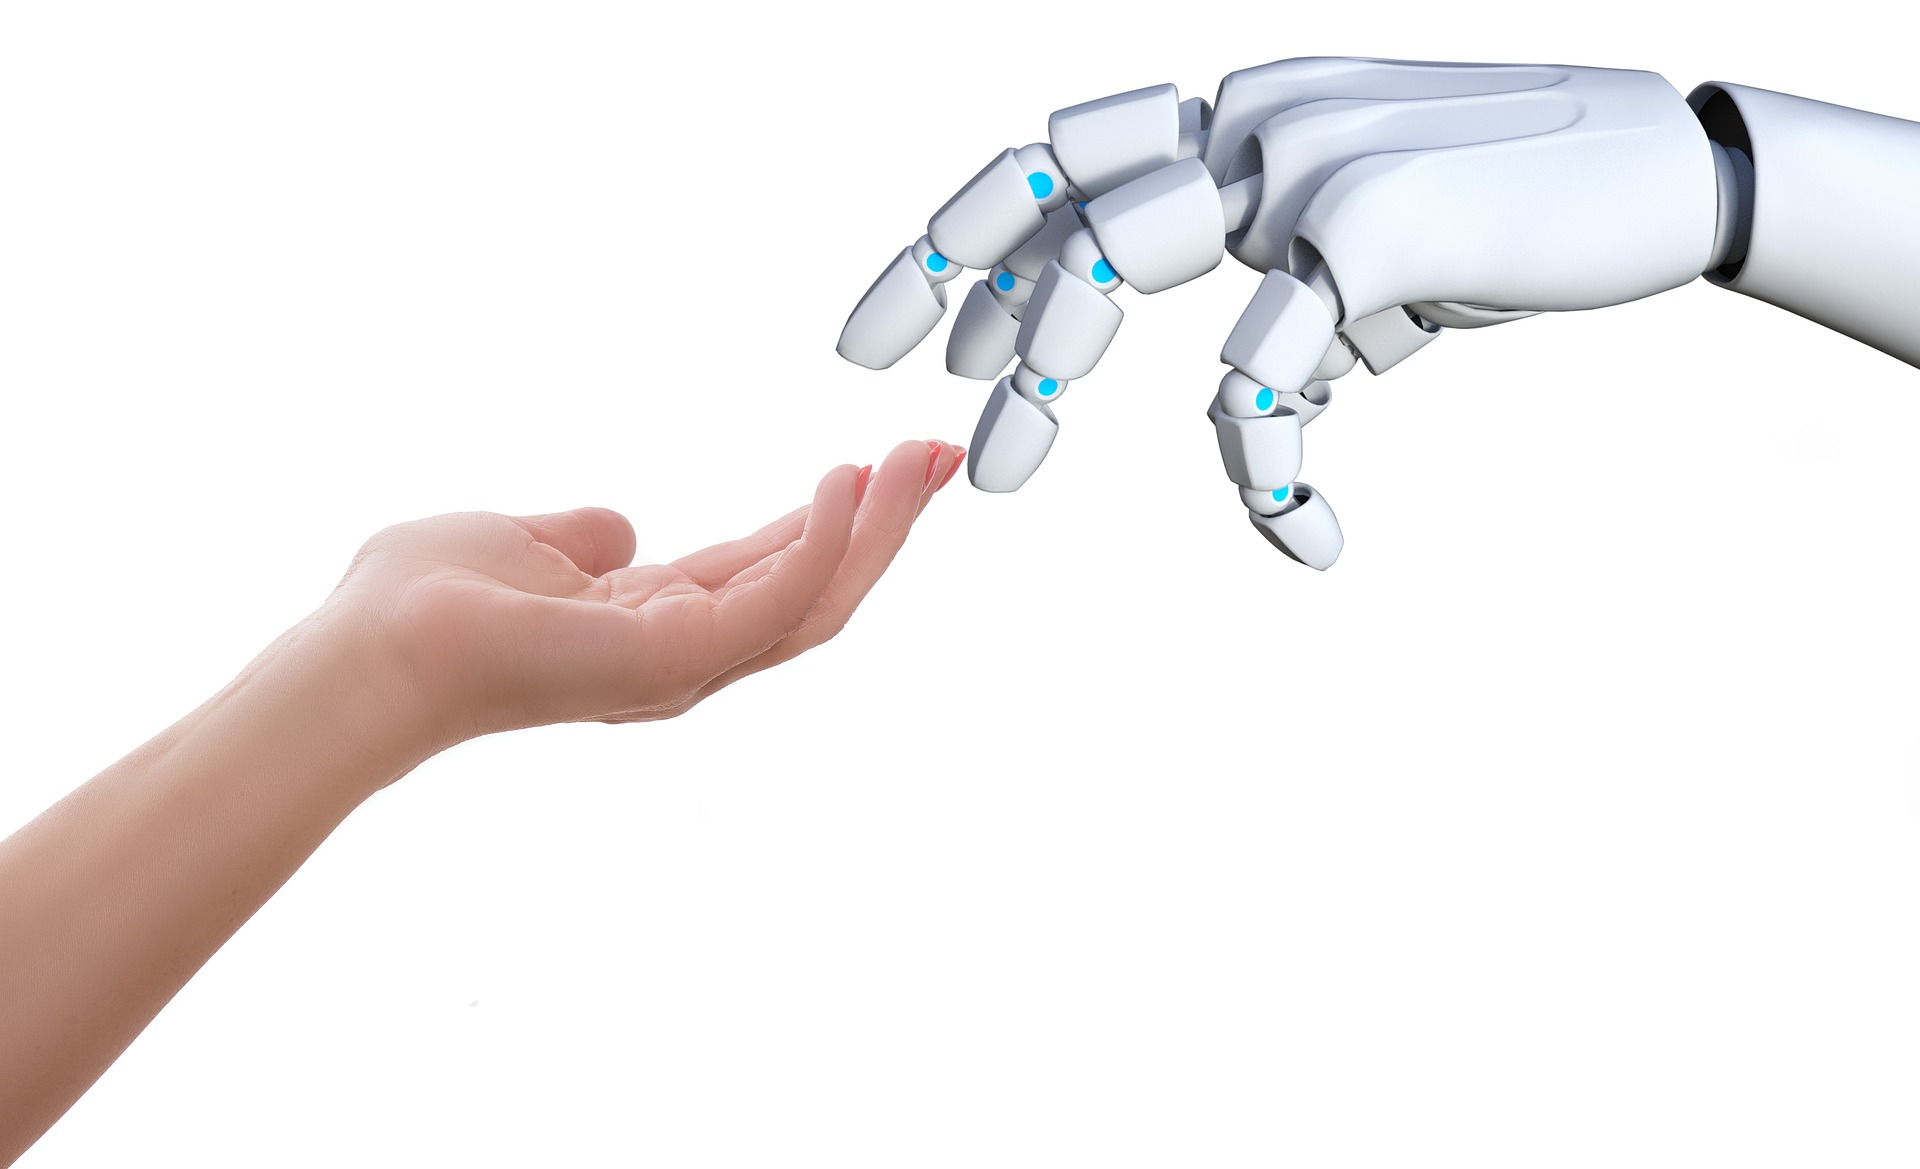 Robot touching human arm